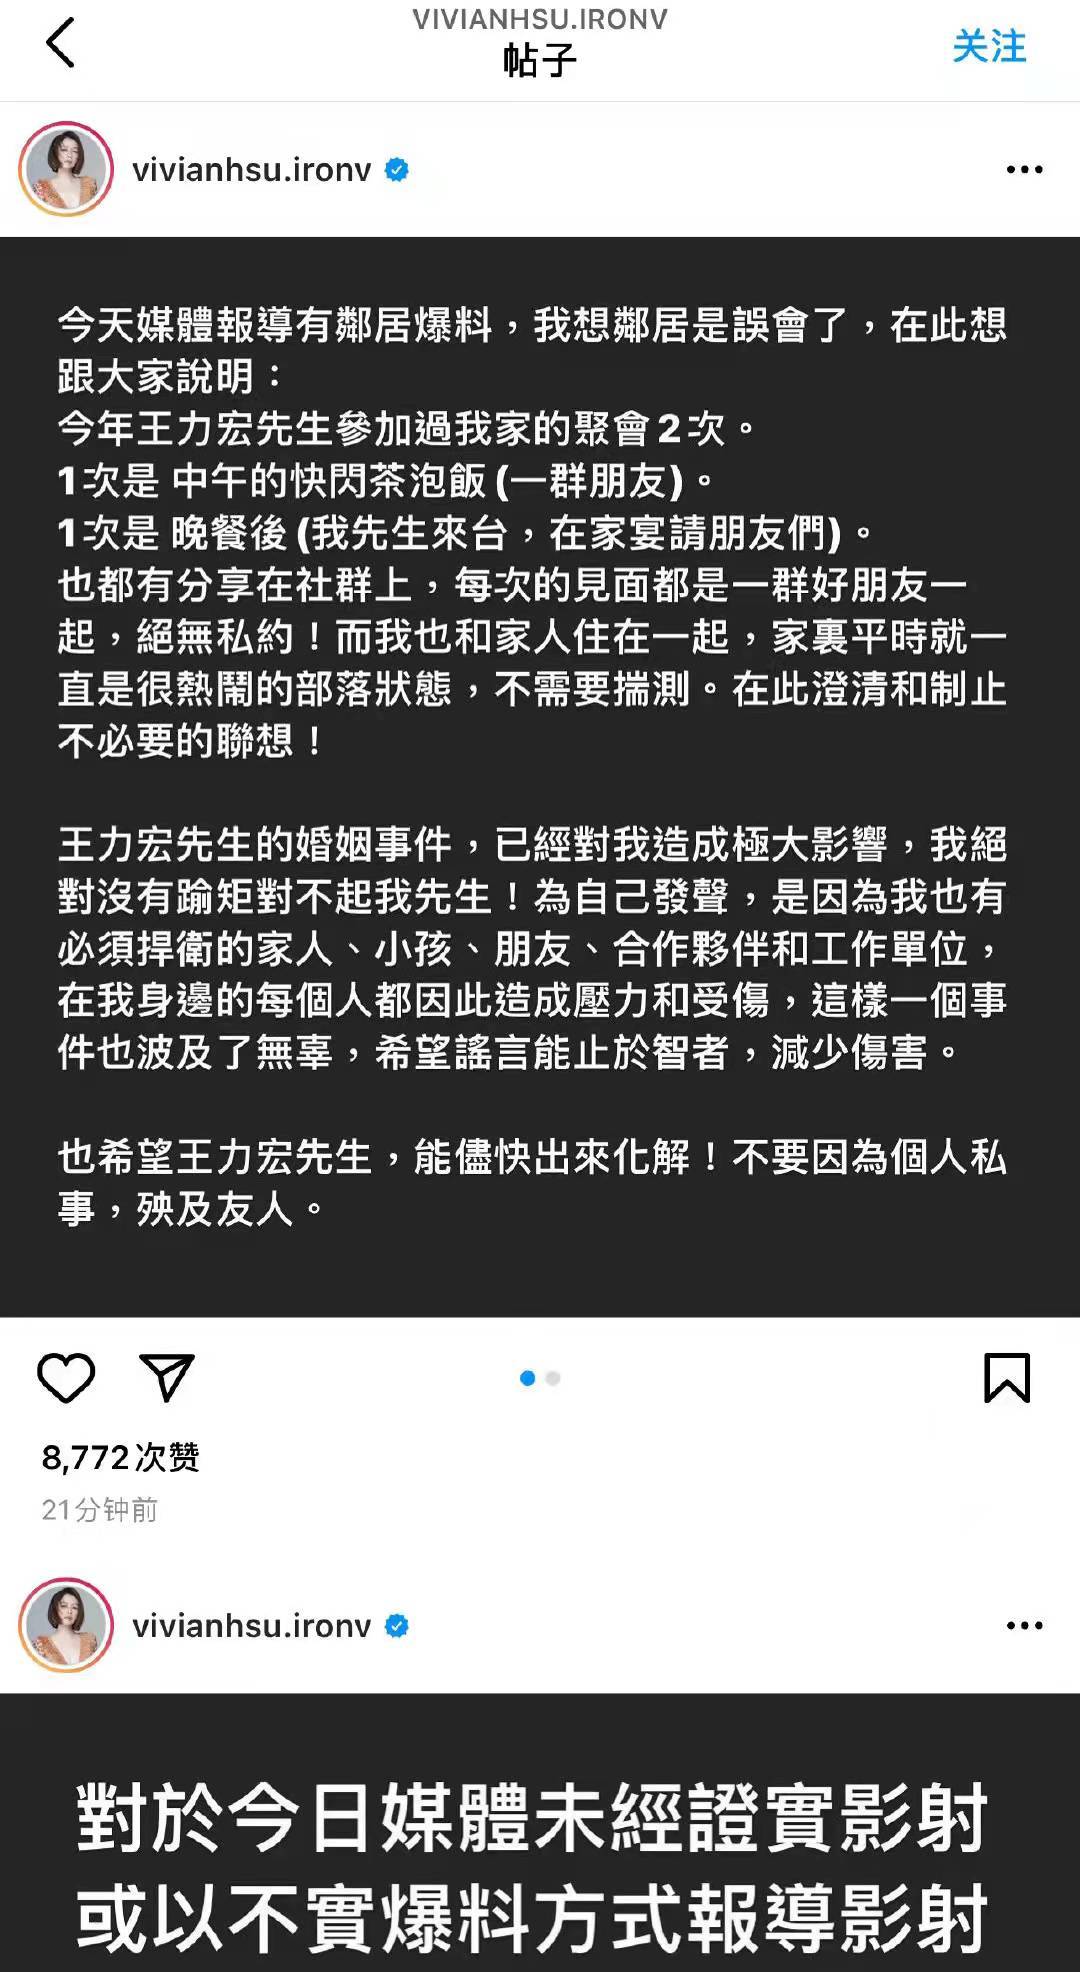 李靓蕾辟谣王力宏与范玮琪夫妇传言 否认排除法暗示徐若瑄